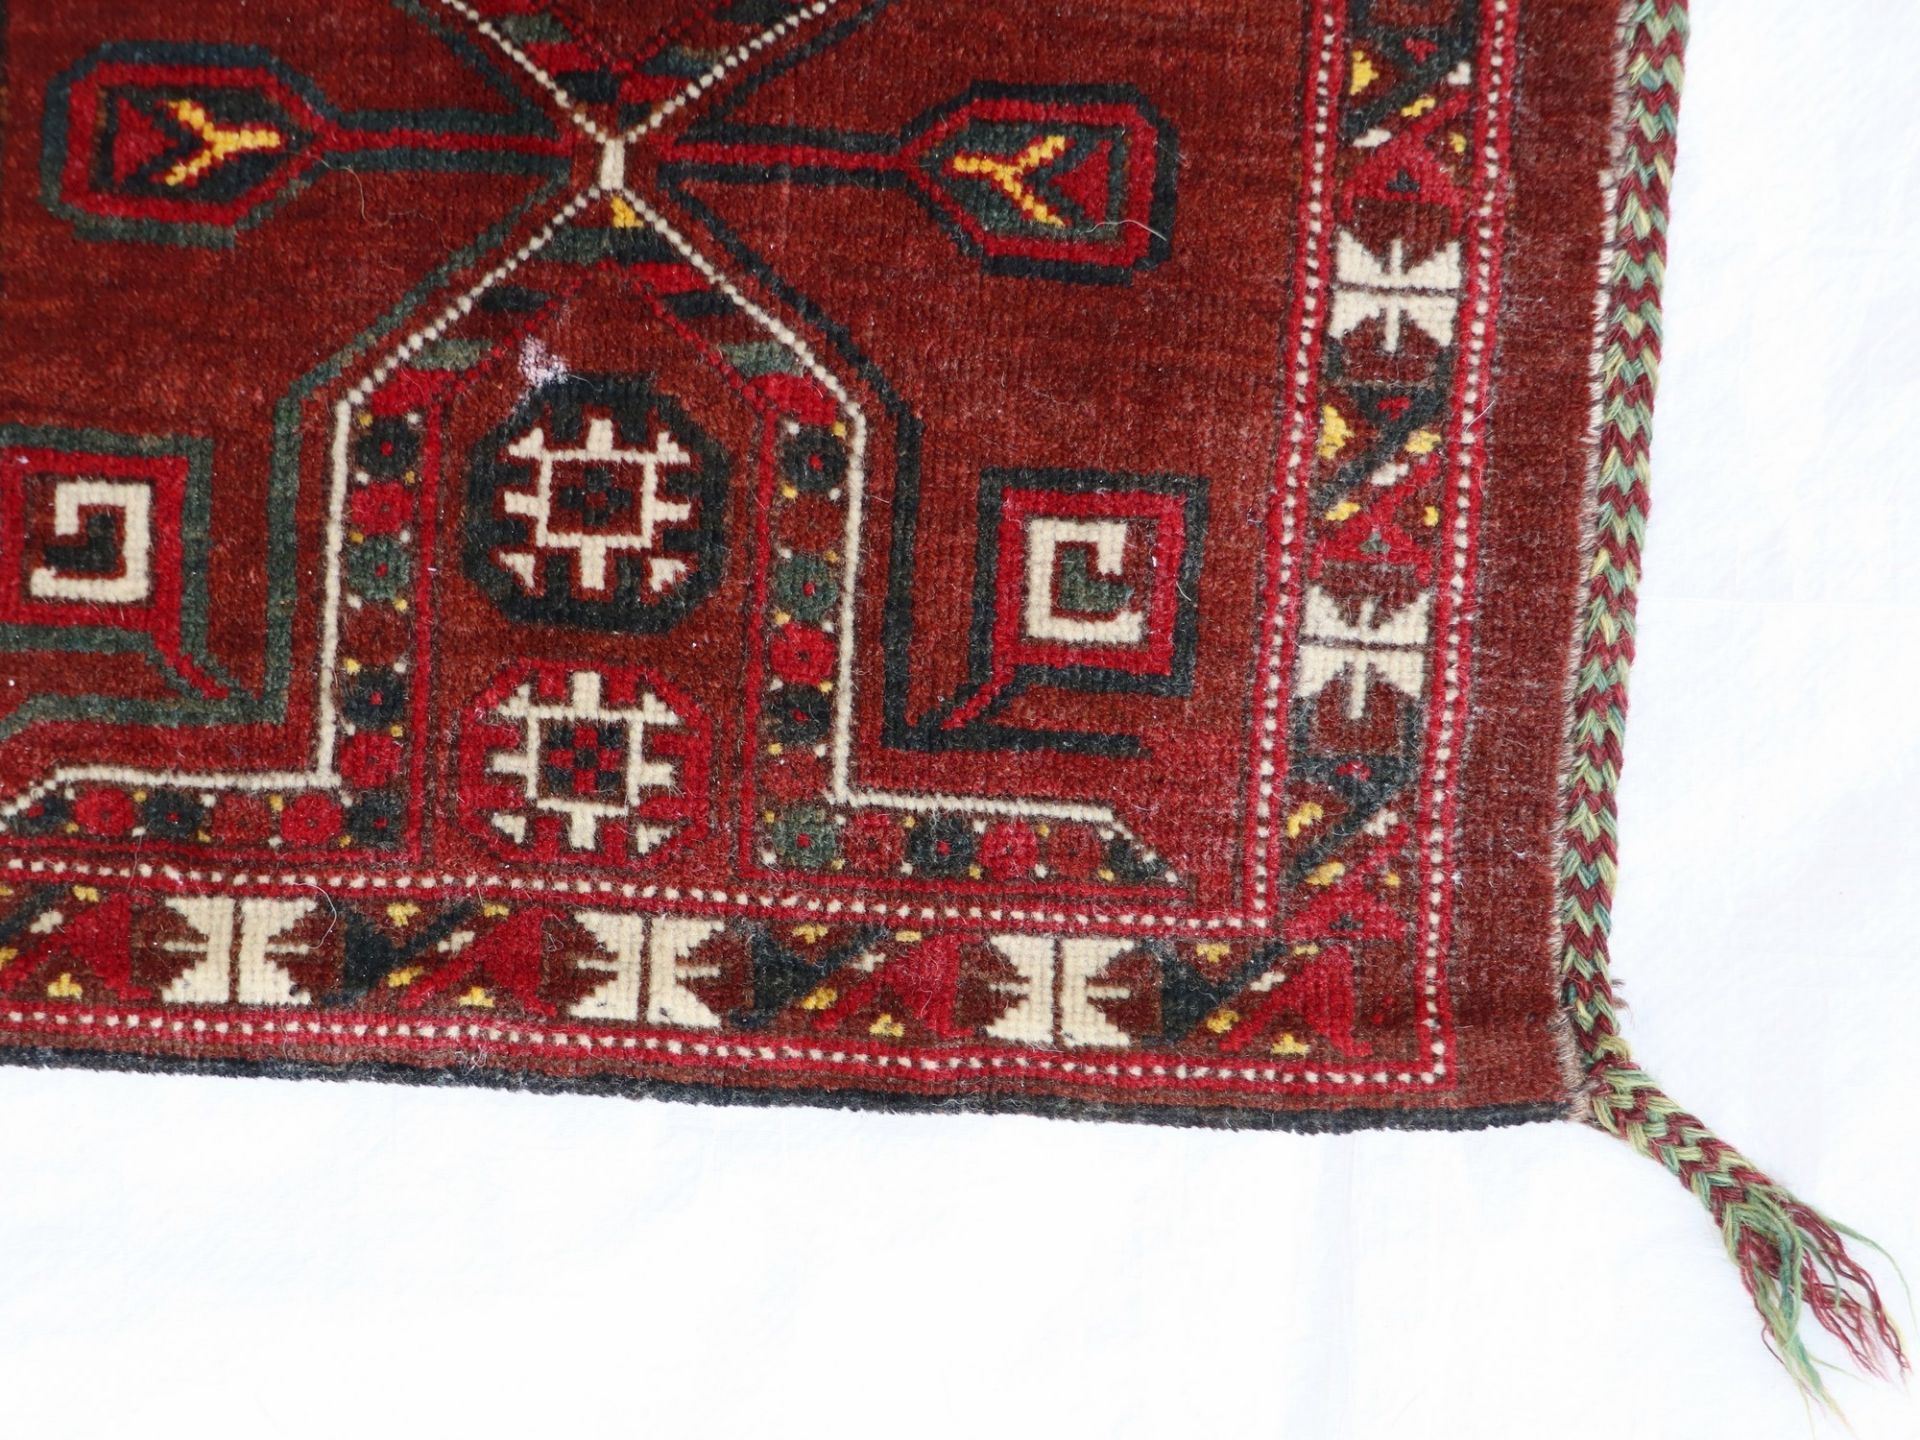 Satteltaschenfront Turkmenistan, Wolle, umgearbeitet, fortlaufendes Medaillonmotiv, rotgrundig, - Bild 3 aus 7